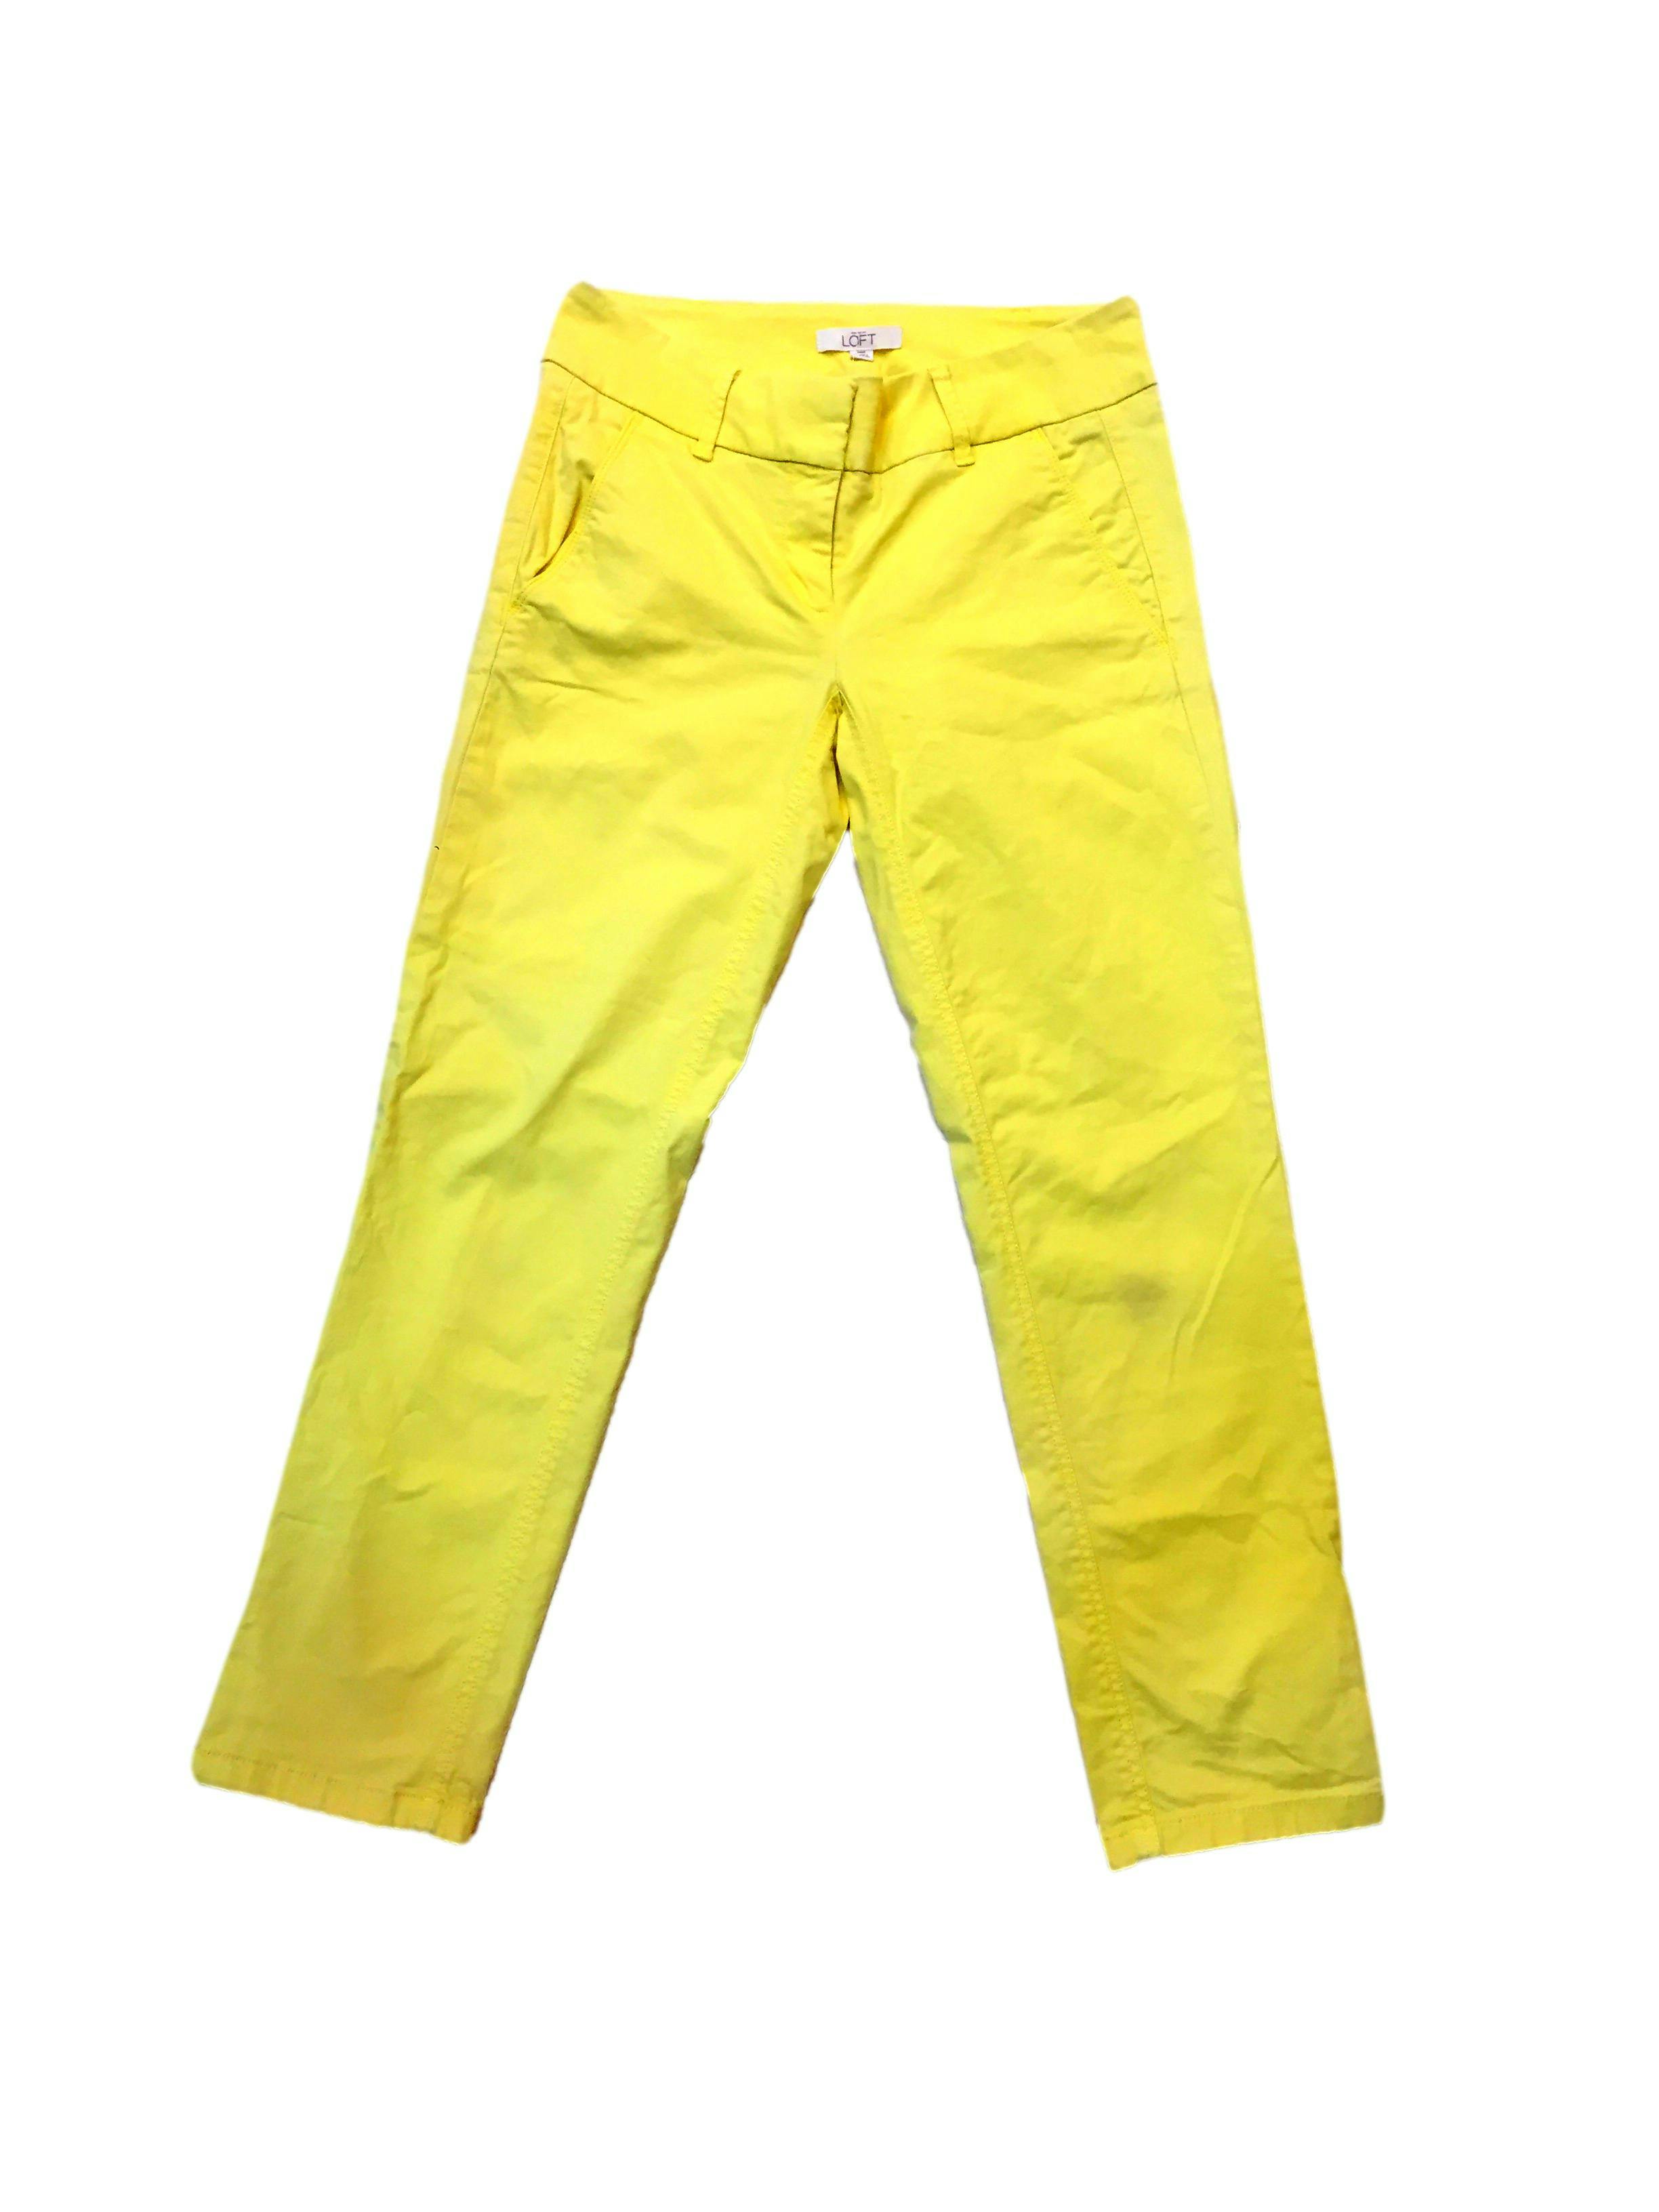 Pantalón Loft 98% algodón amarillo pastel, tipo medio. Pretina 76cm Cadera 90cm 